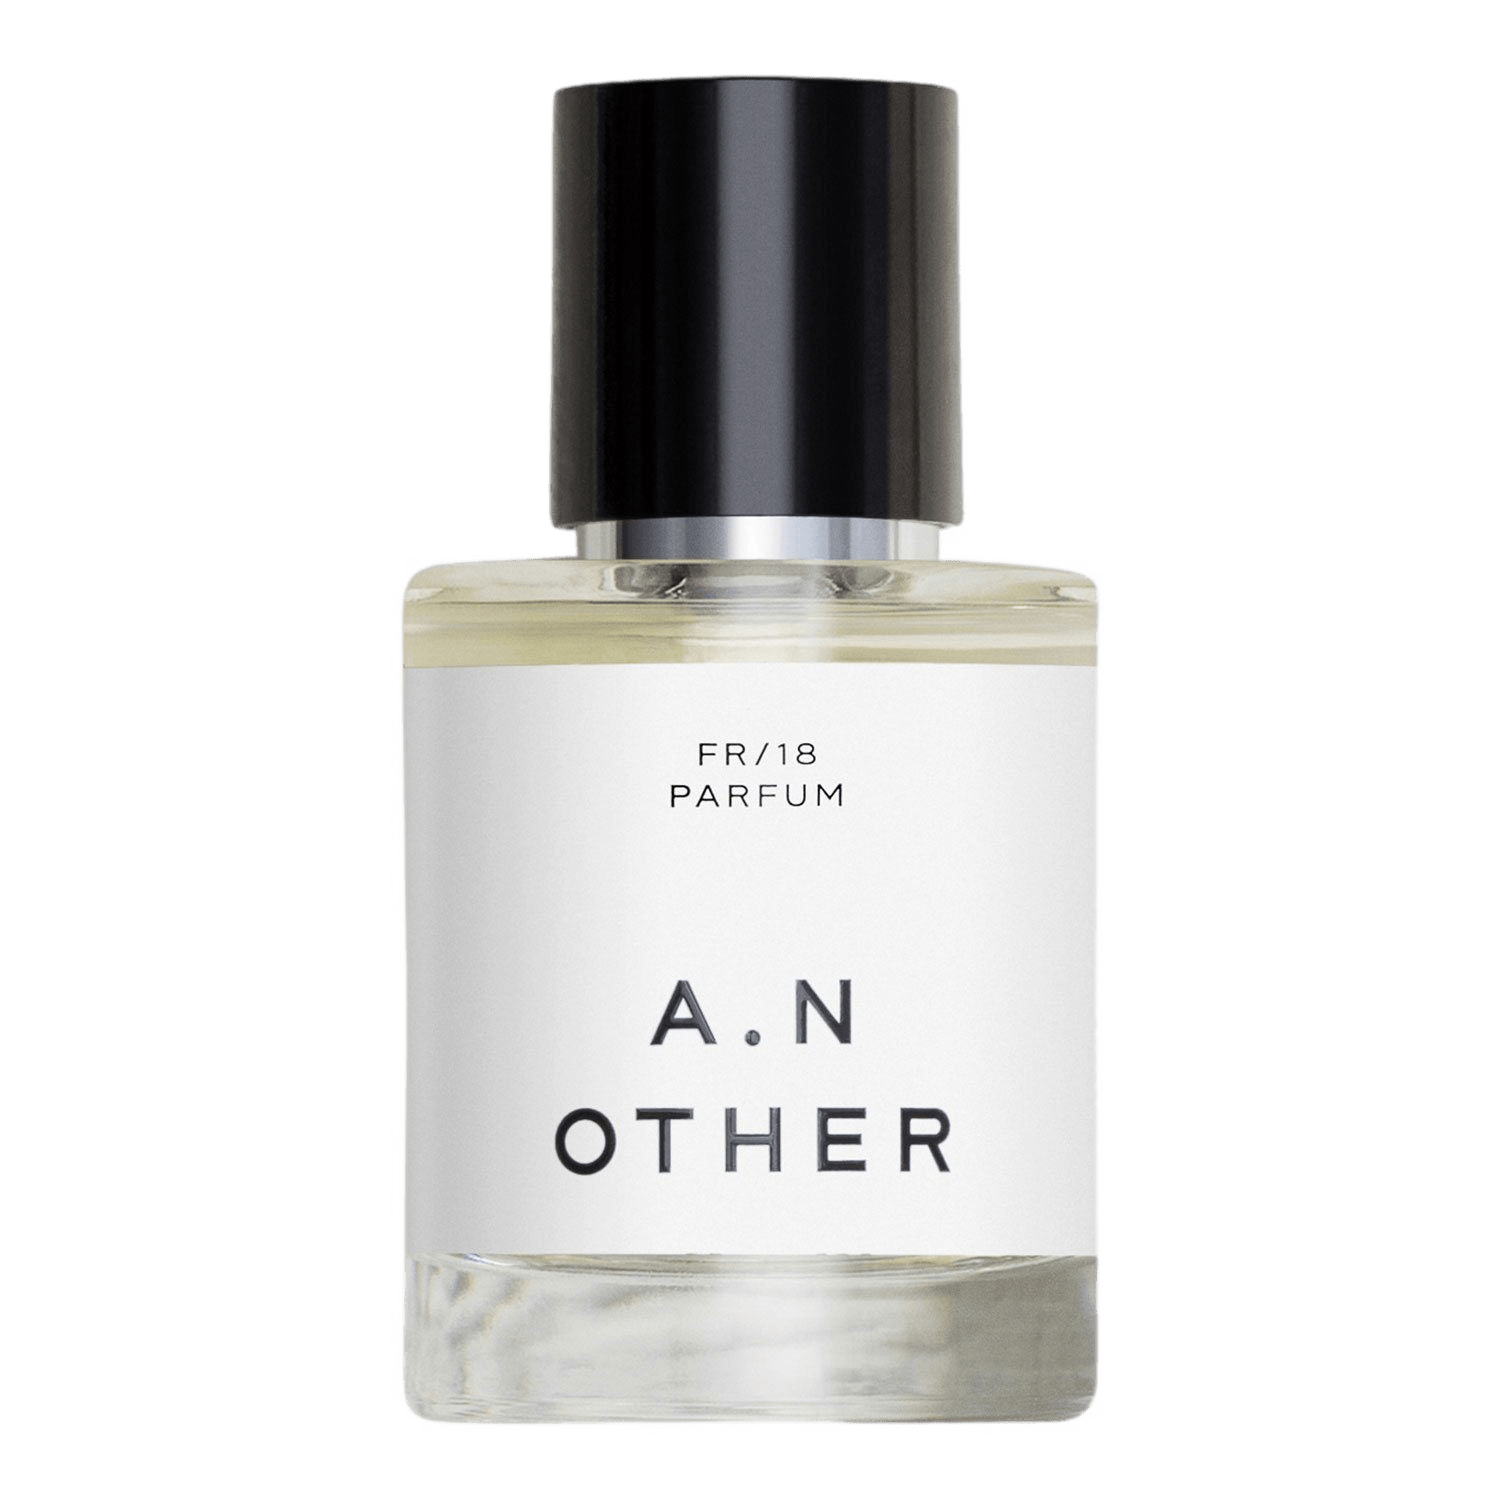 A. N. Other FR/18 Eau de Parfum